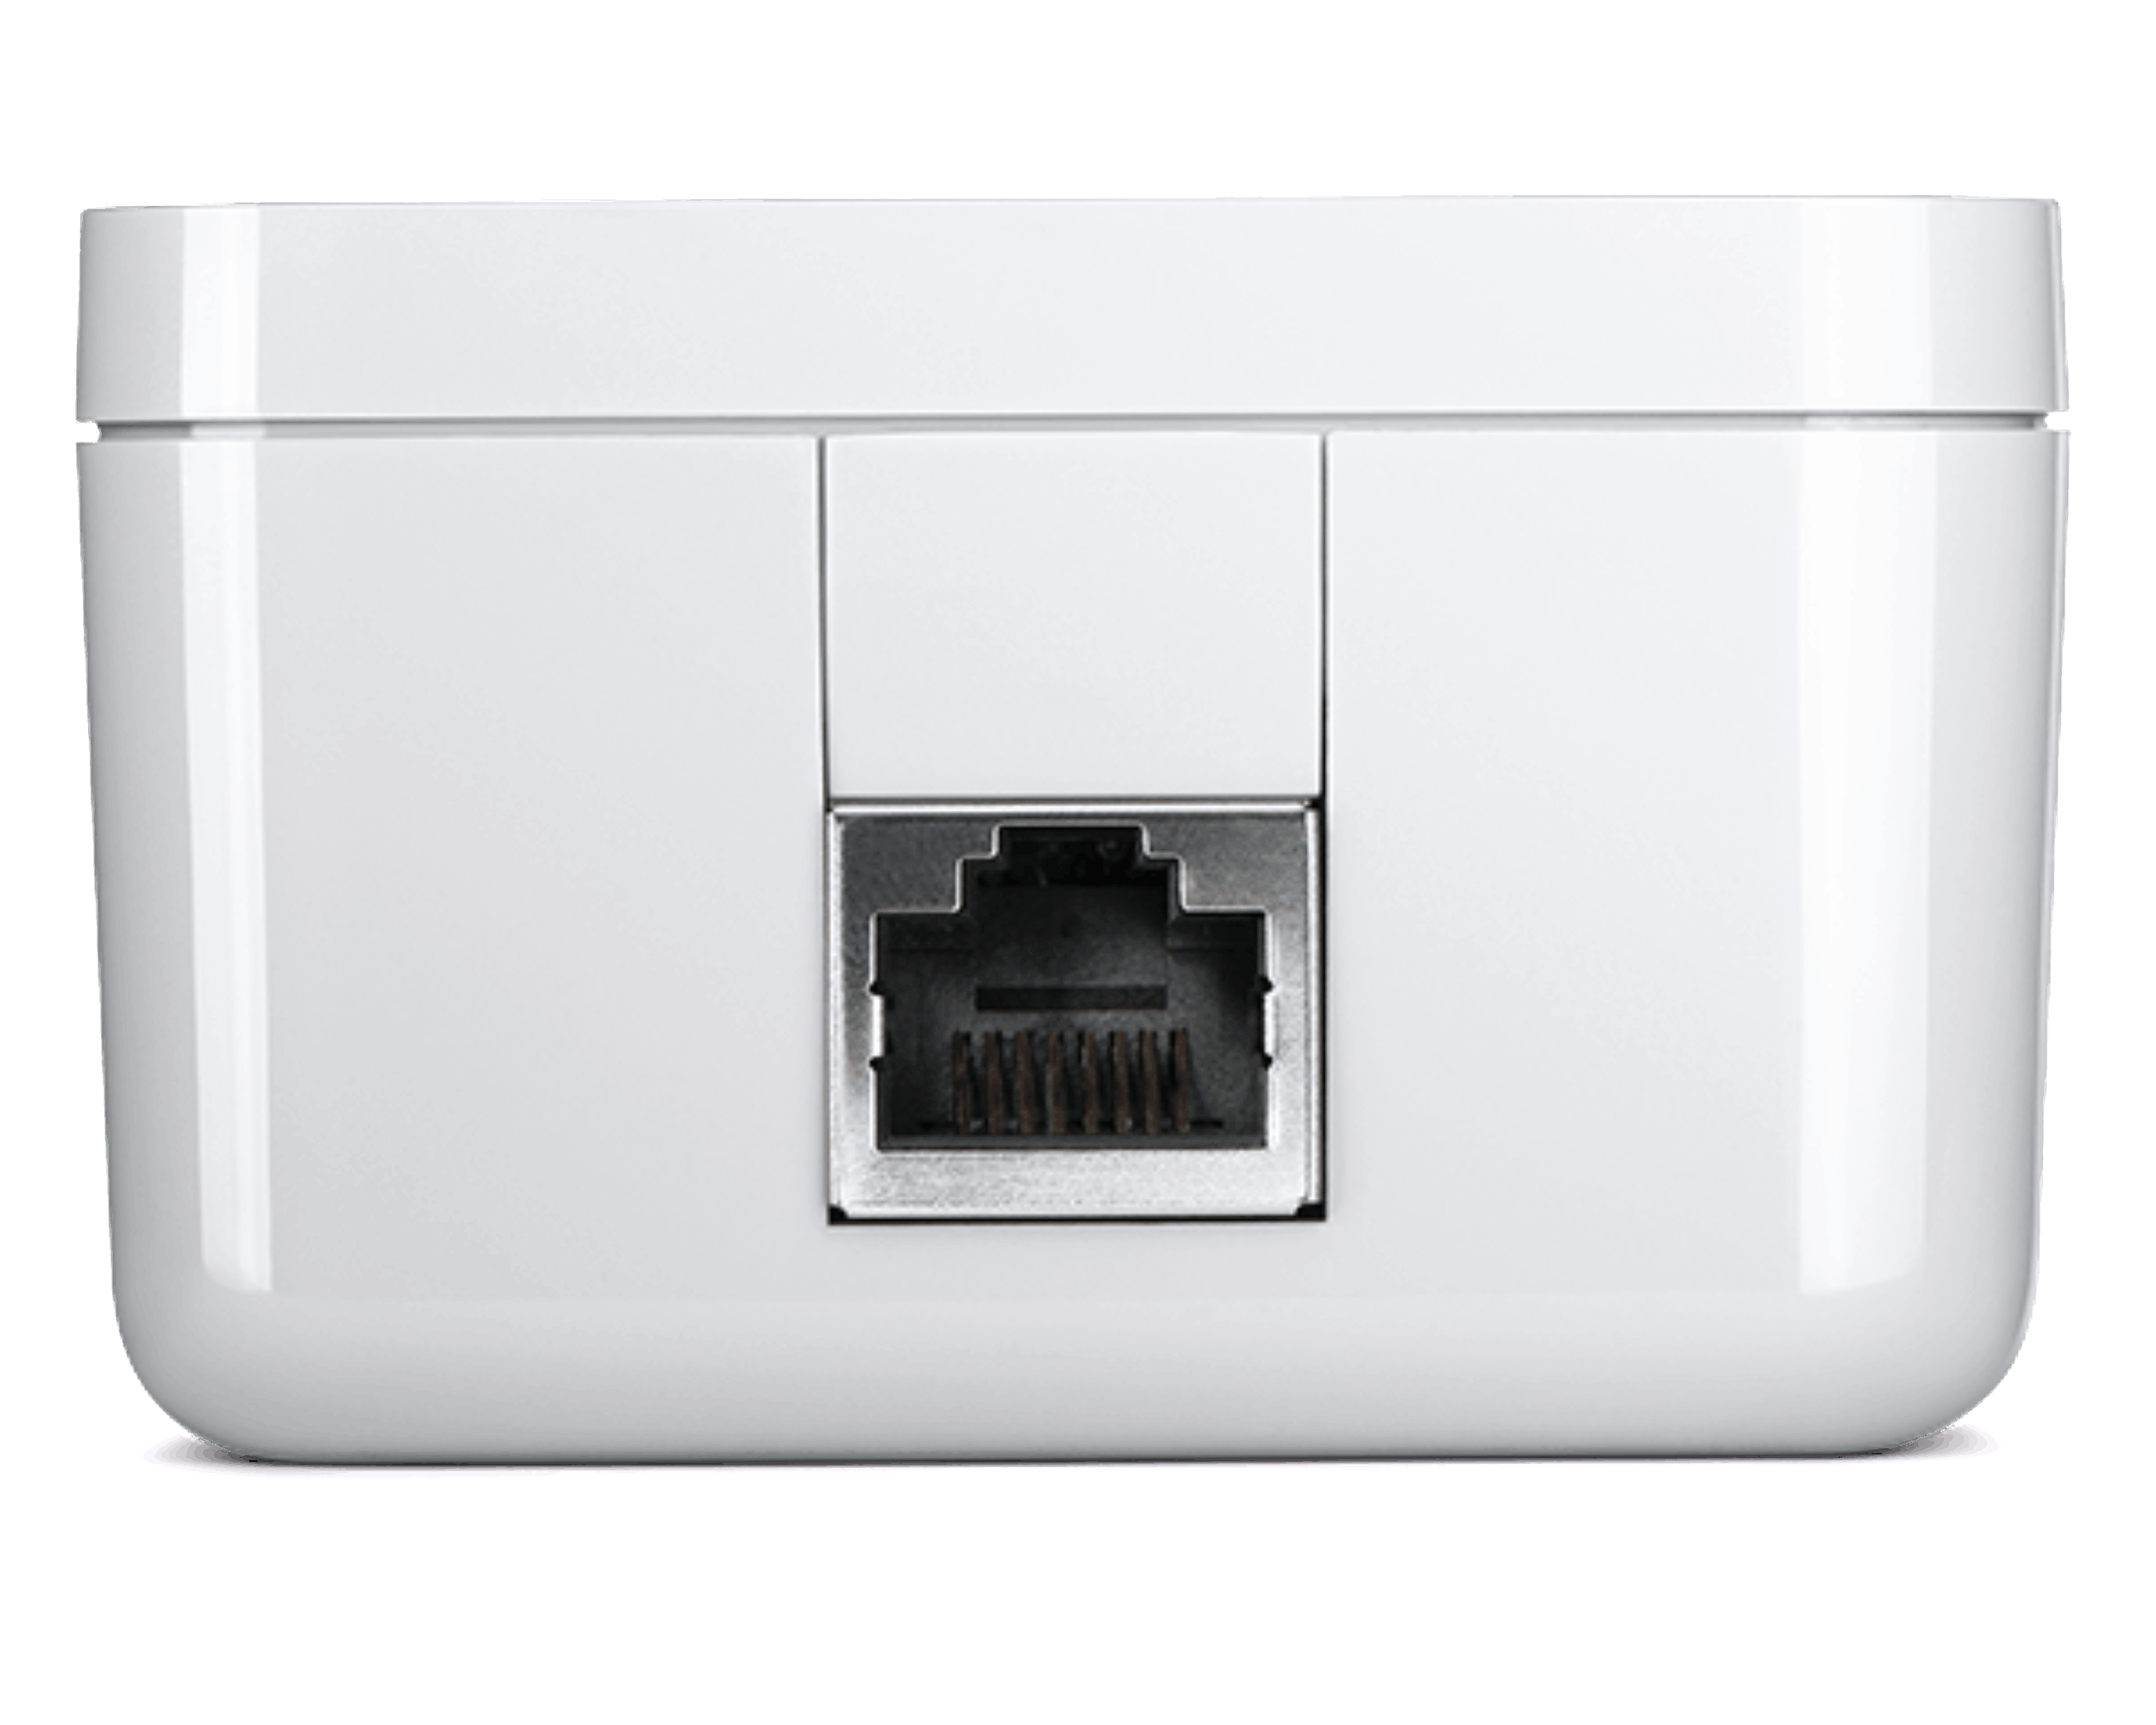 Mbit/s kabelgebunden 1 Powerline DEVOLO 1200 Adapter Kit Magic Starter LAN 8295